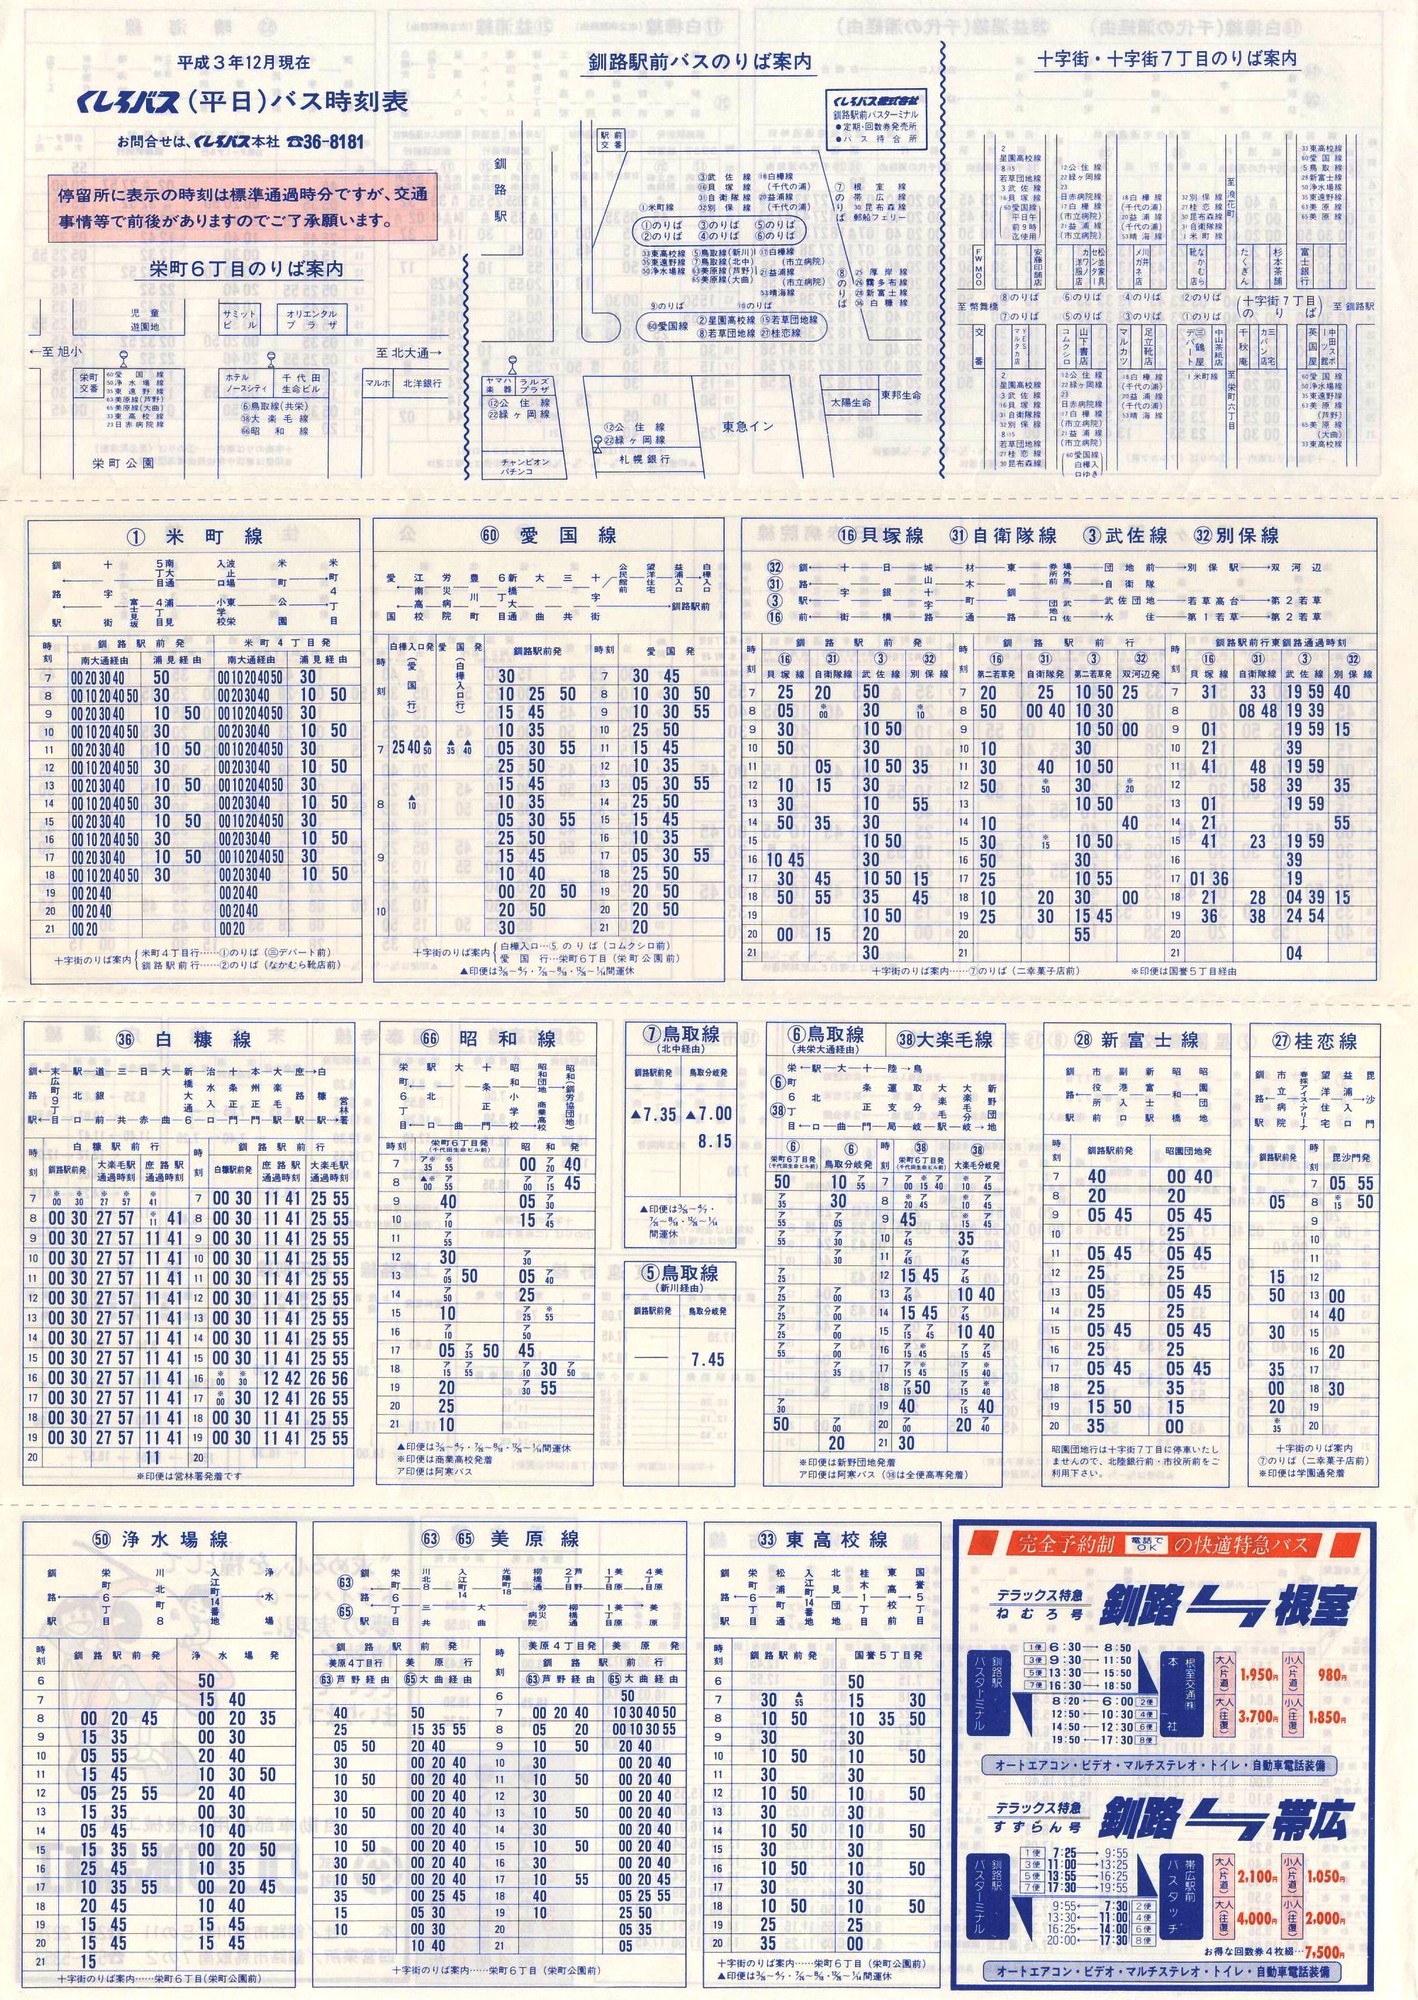 1988-11現在_東邦交通_平日時刻表表面